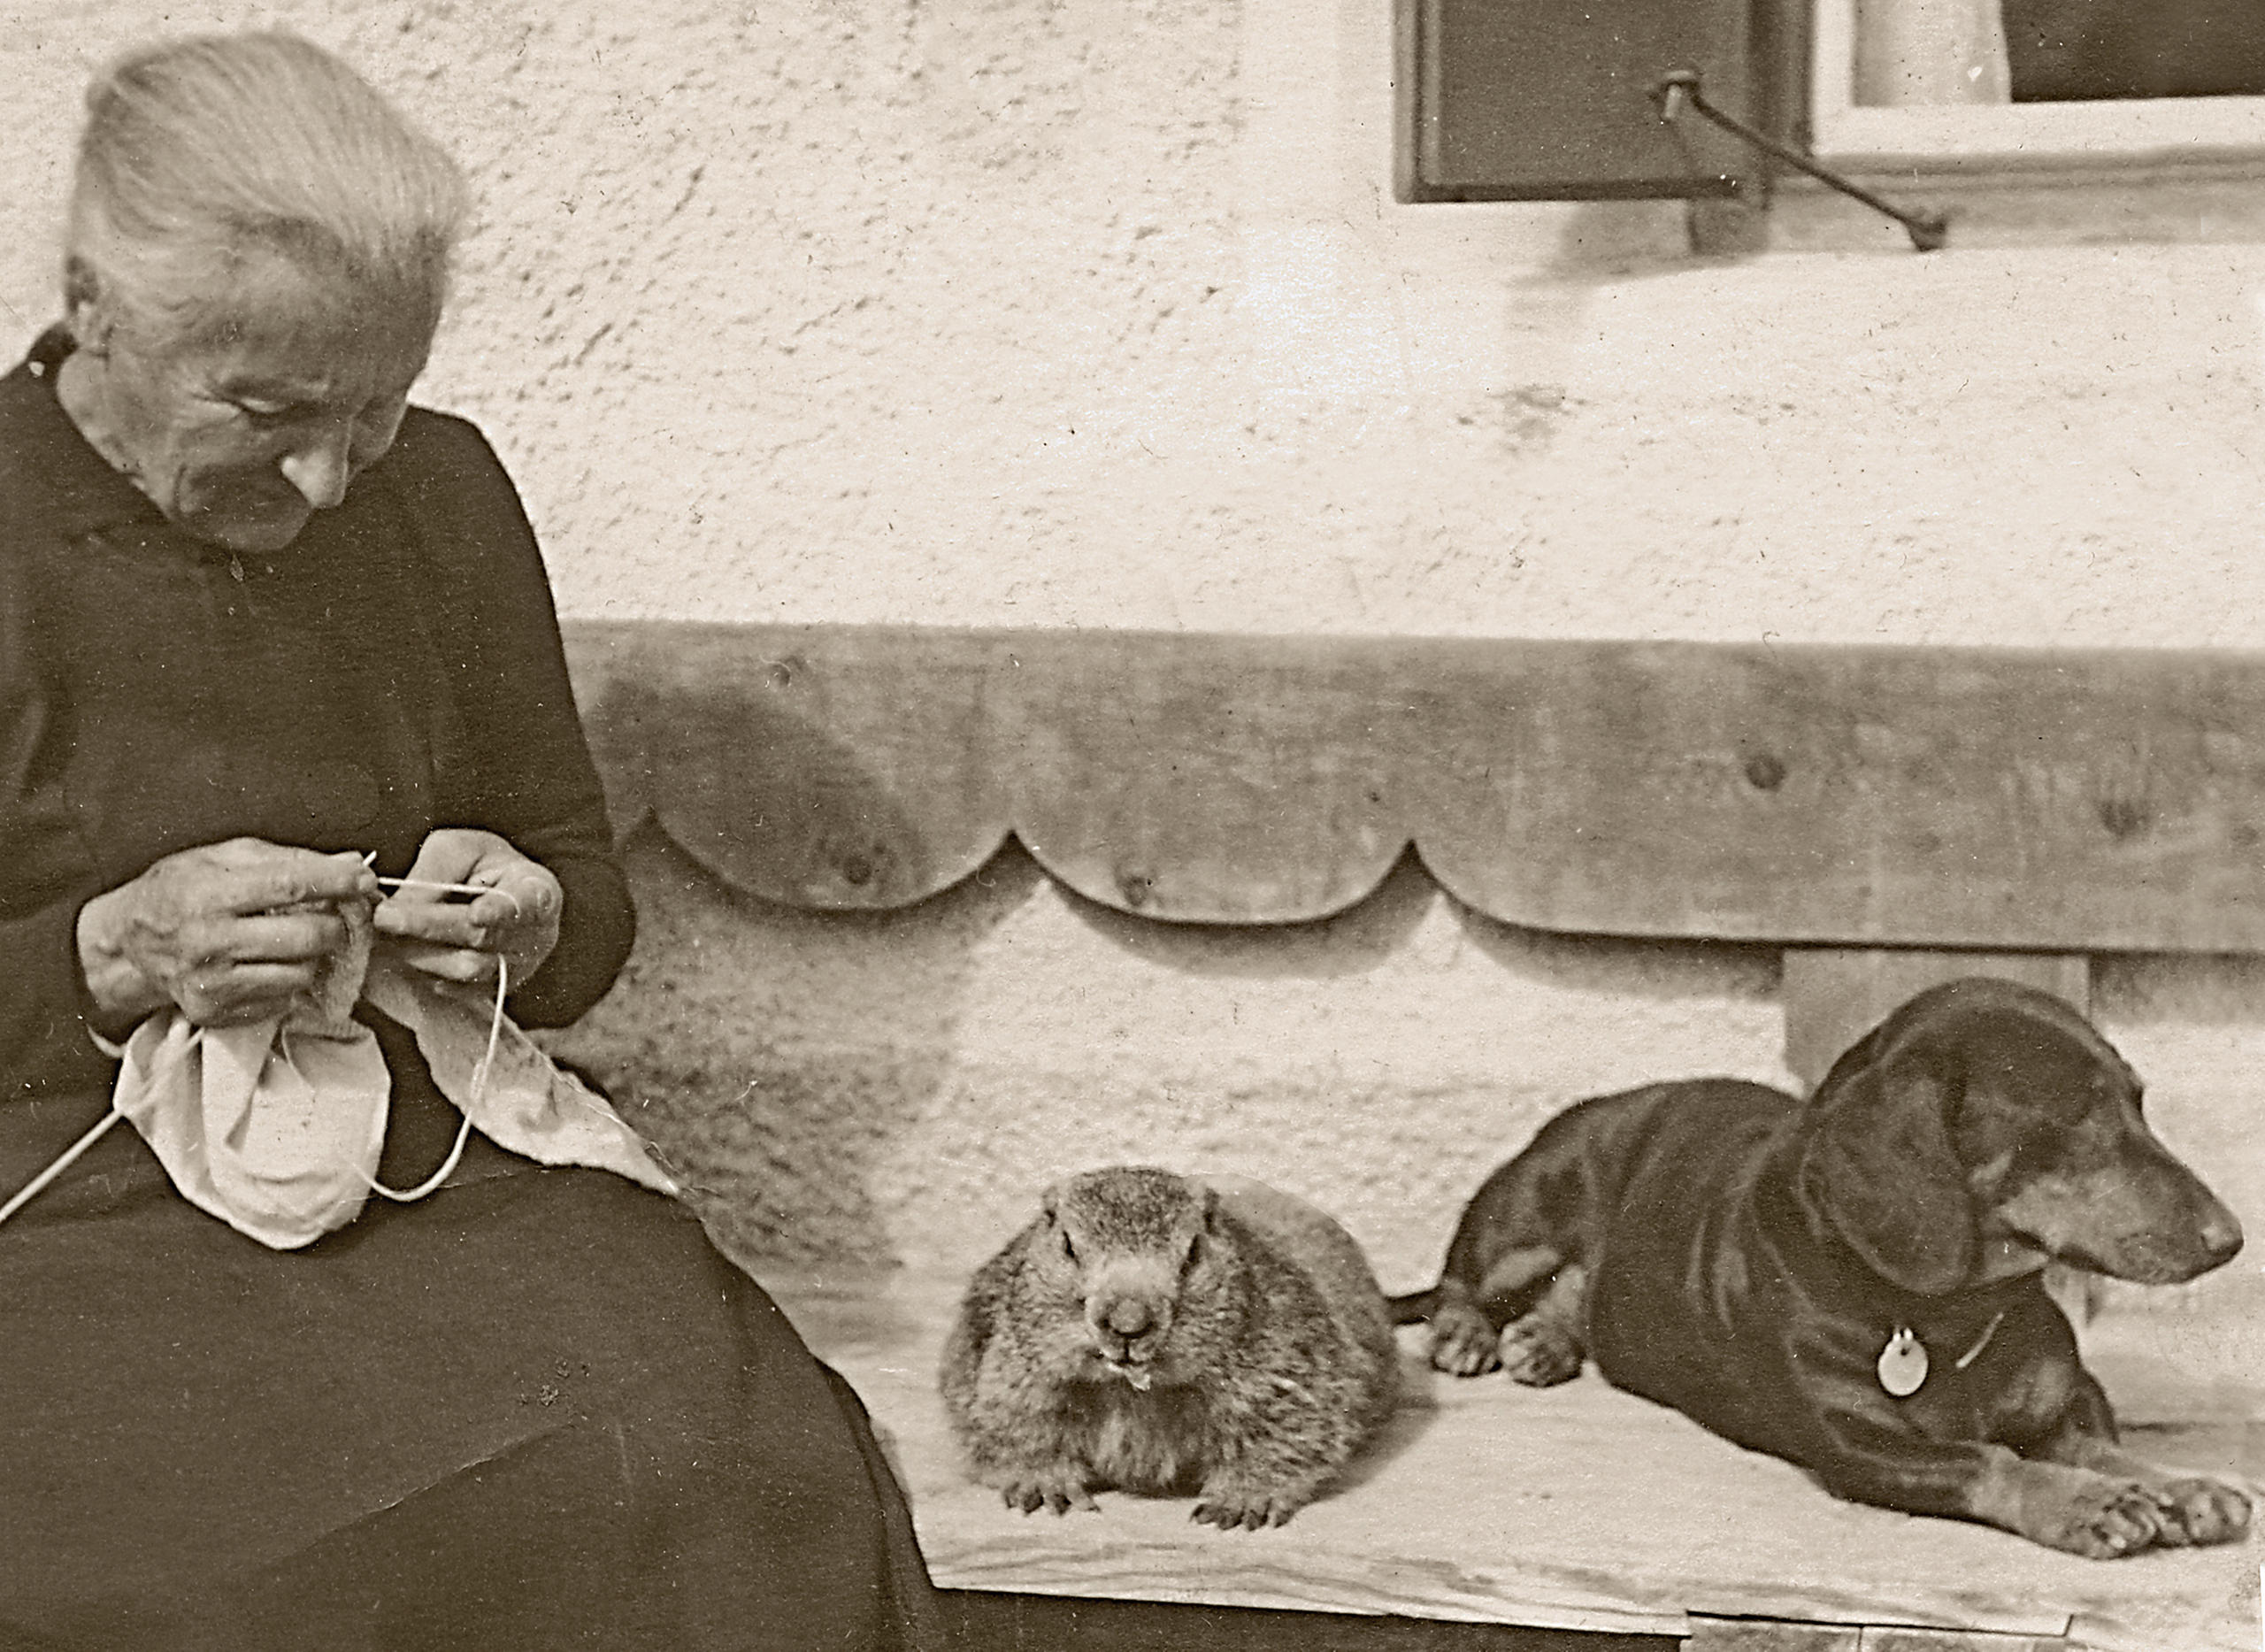 Anziana che lavora a maglia con a fianco una marmotta e un cane